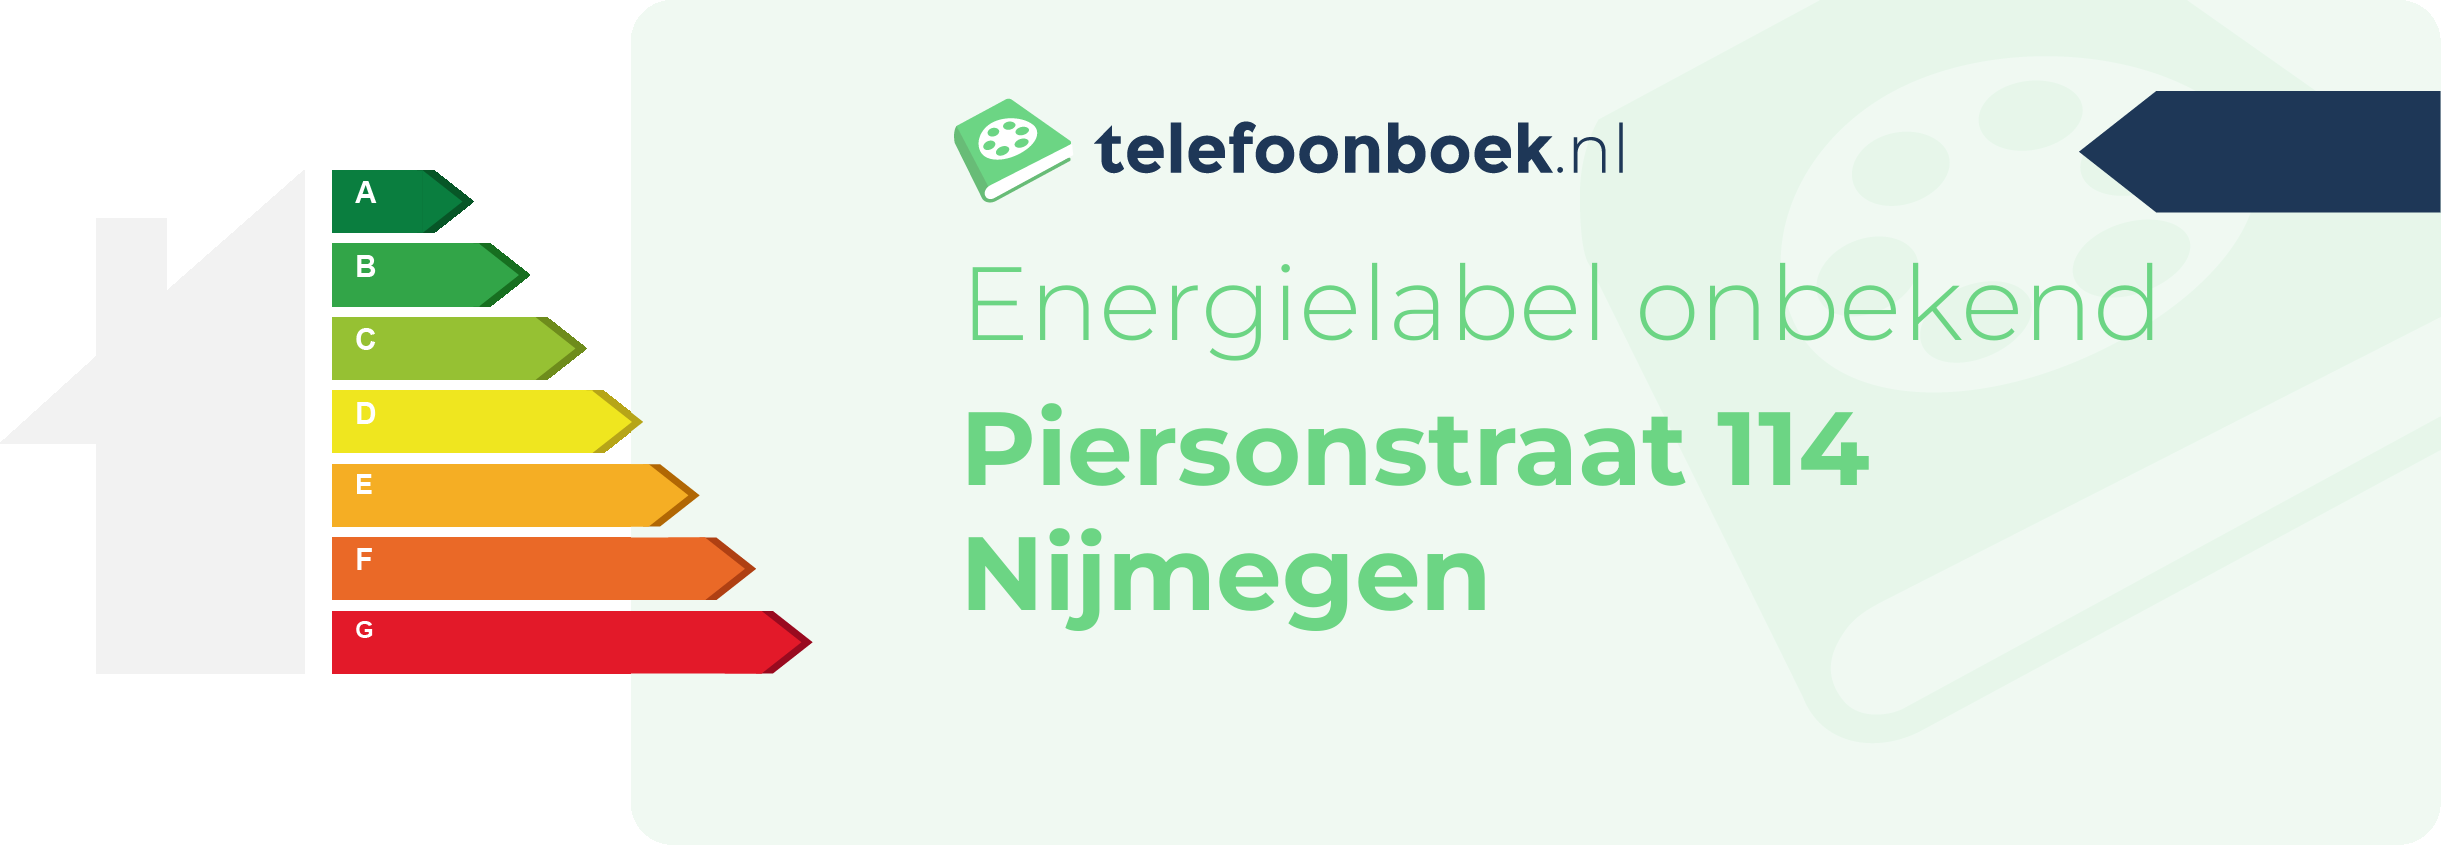 Energielabel Piersonstraat 114 Nijmegen